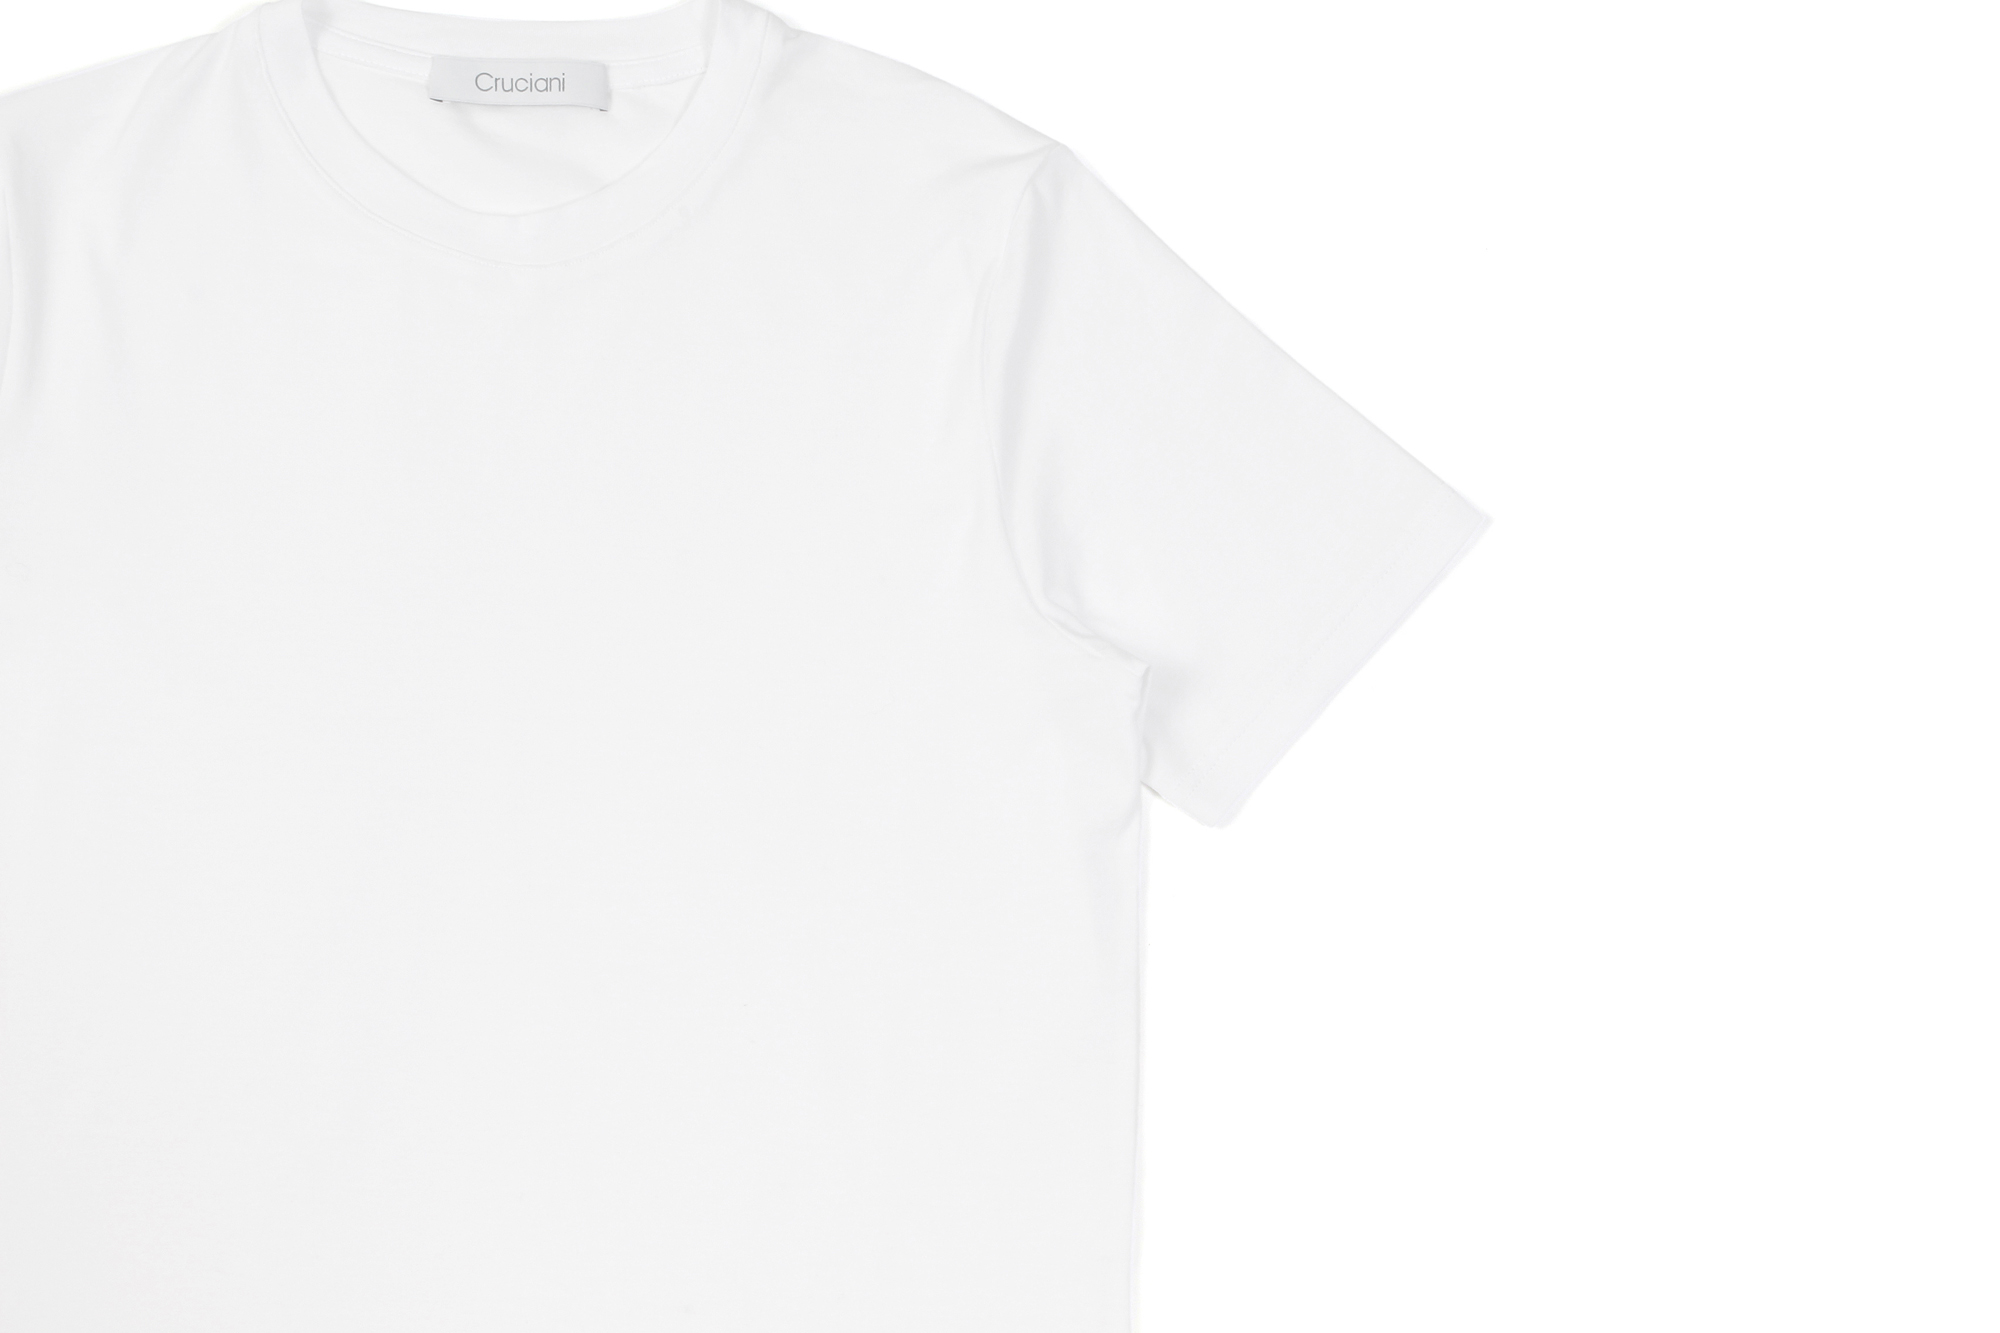 Cruciani (クルチアーニ) Cotton Stretch Crew Neck T-shirt (コットン ストレッチ クルーネック Tシャツ) クルーネック Tシャツ WHITE (ホワイト・1000) made in italy (イタリア製) 2021 春夏新作 愛知 名古屋 Alto e Diritto altoediritto アルトエデリット Tシャツ　ニットTシャツ